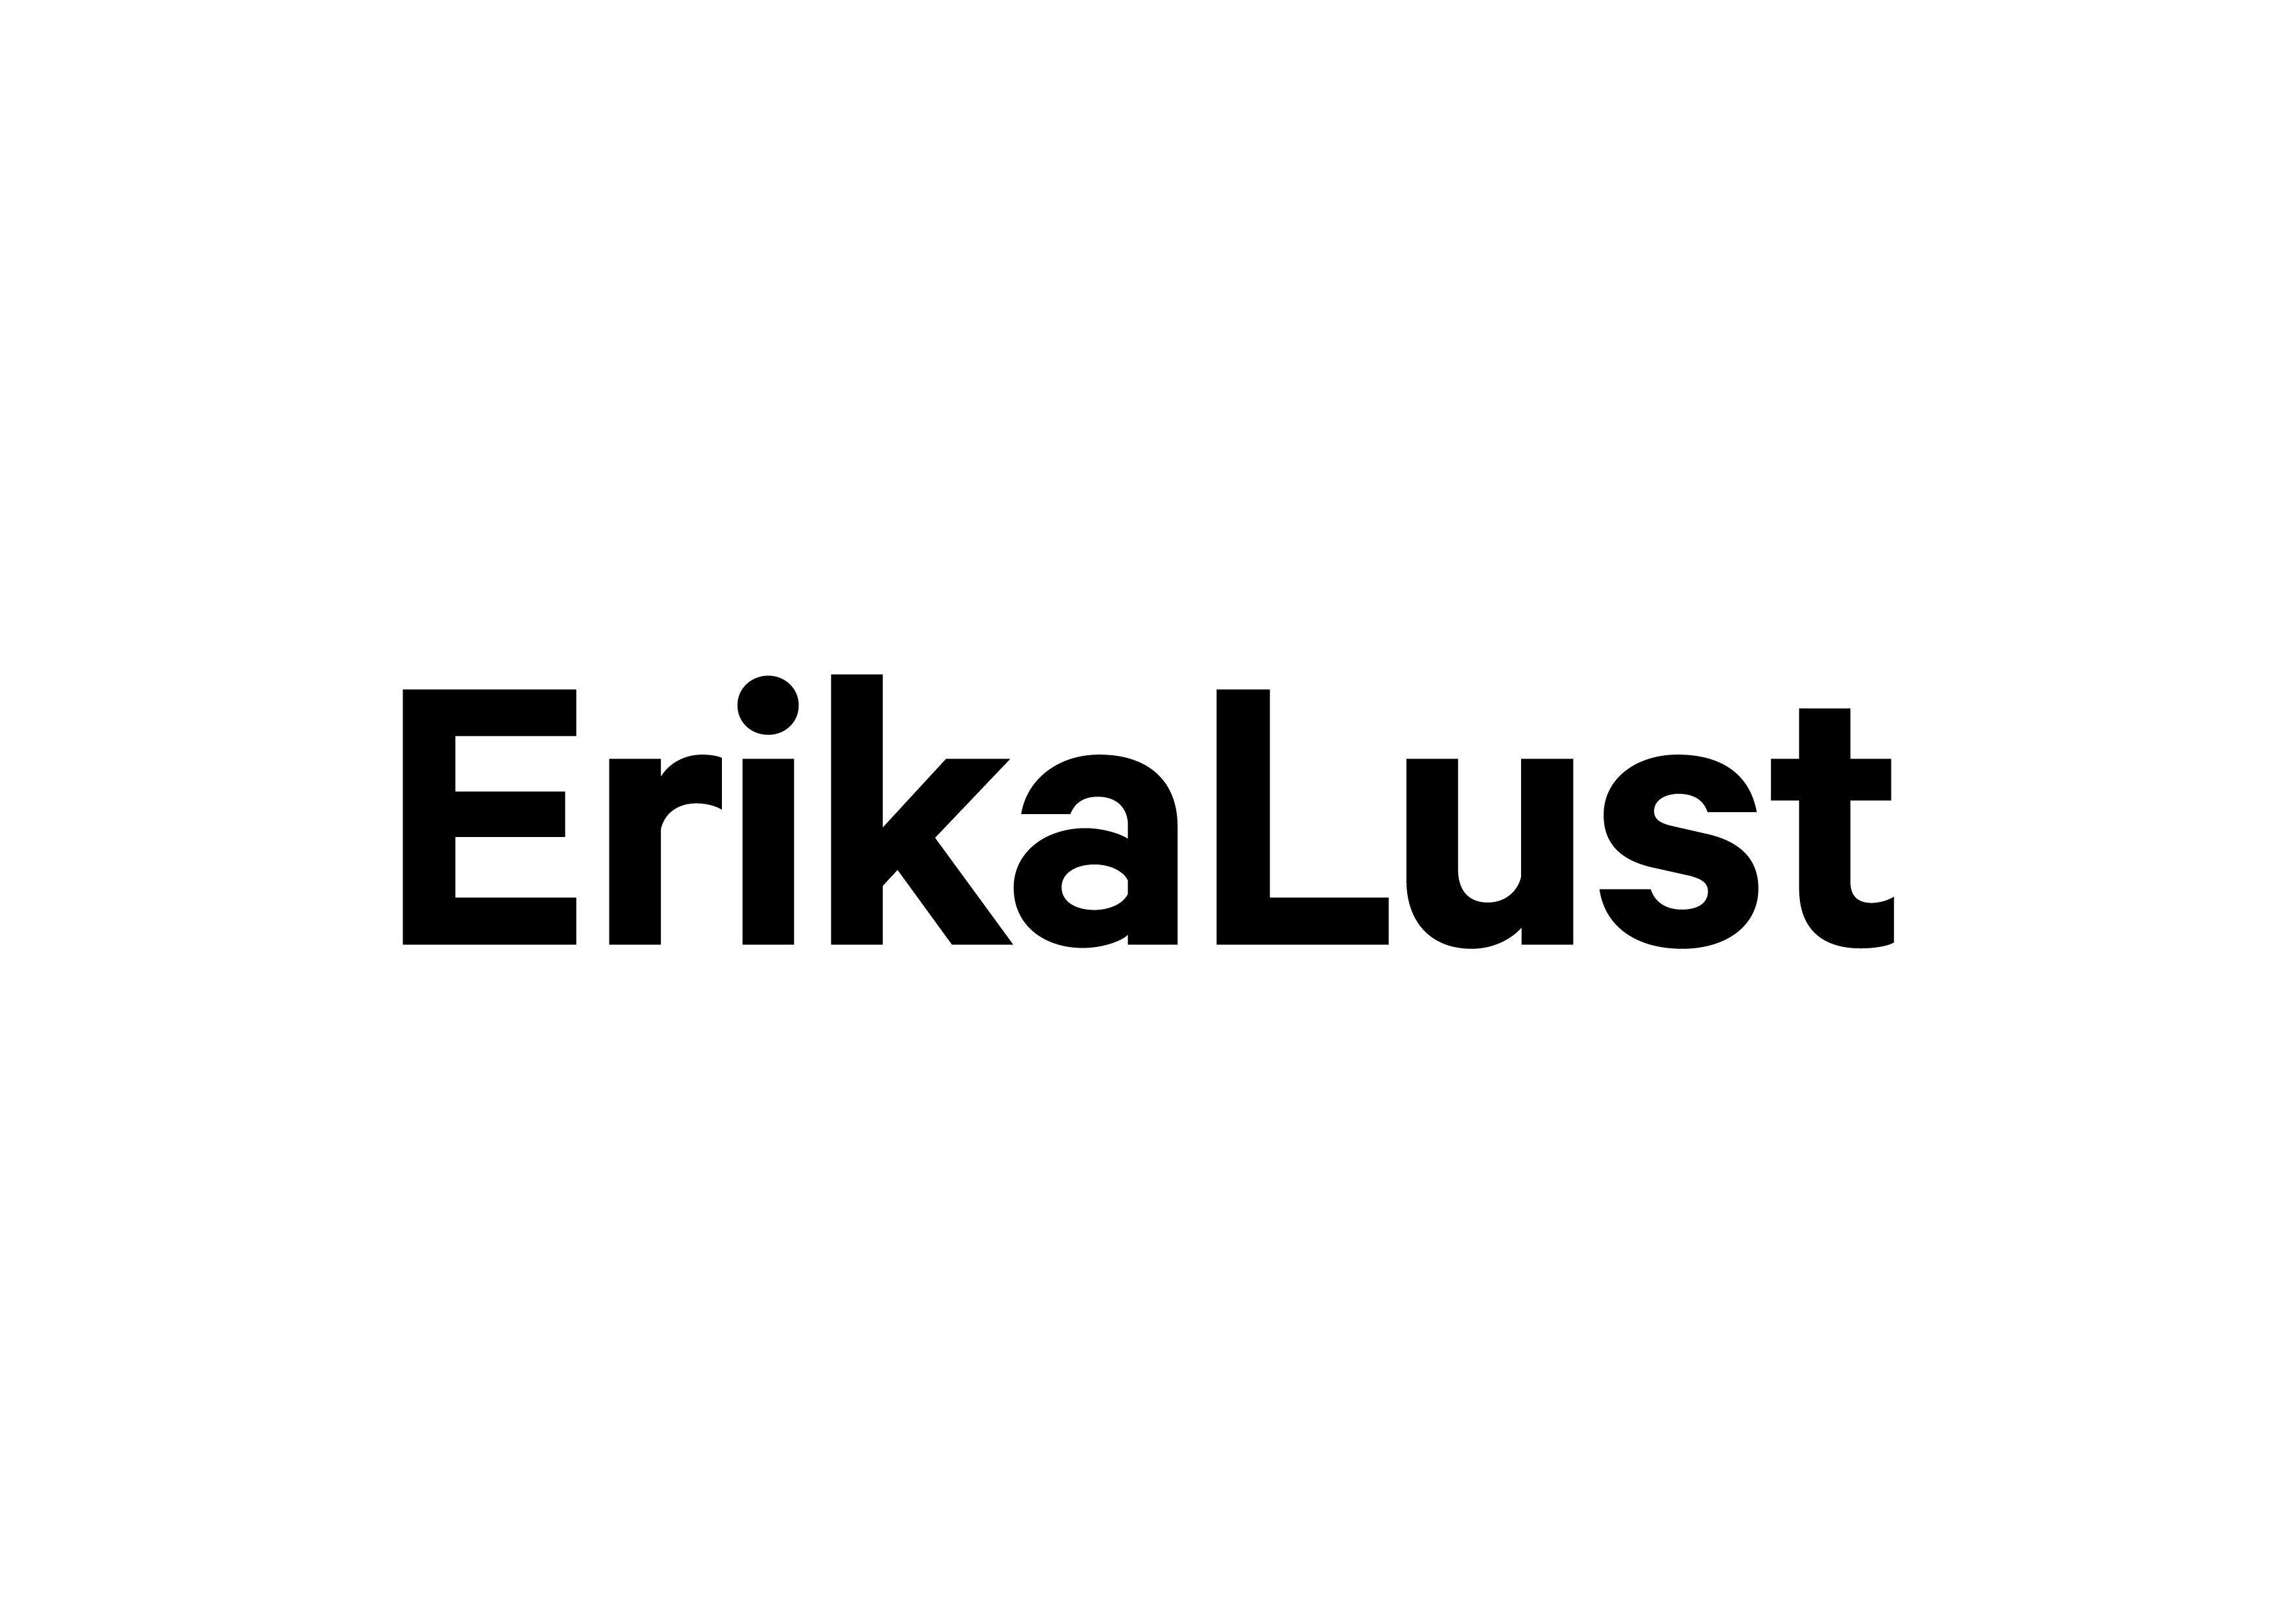 alt="Erika_lust_logo”